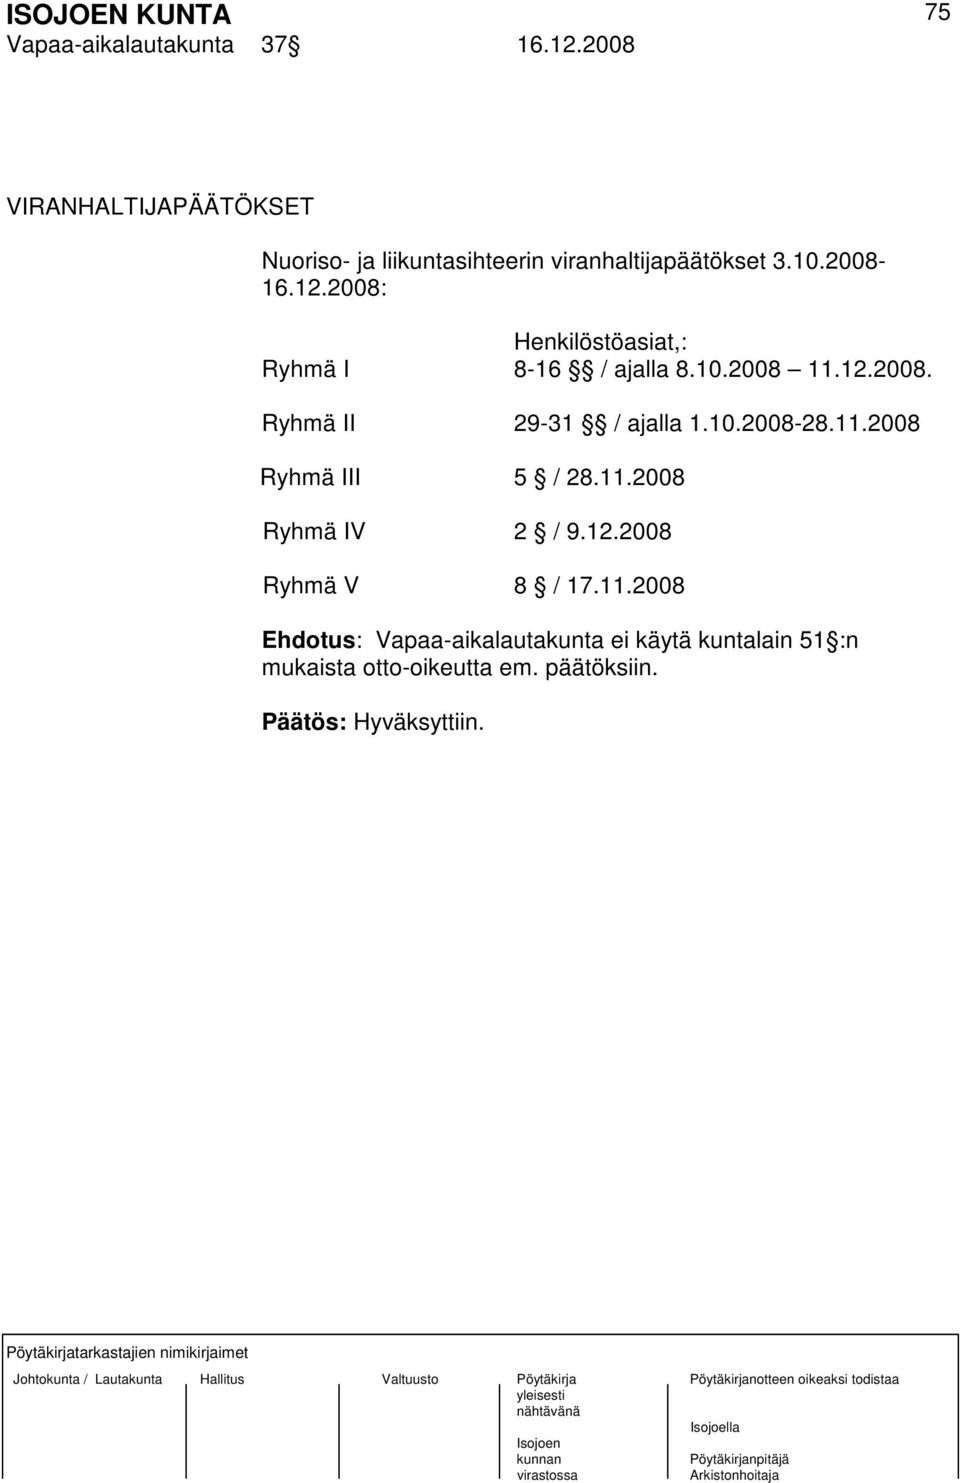 2008: Henkilöstöasiat,: Ryhmä I 8-16 / ajalla 8.10.2008 11.12.2008. Ryhmä II 29-31 / ajalla 1.10.2008-28.